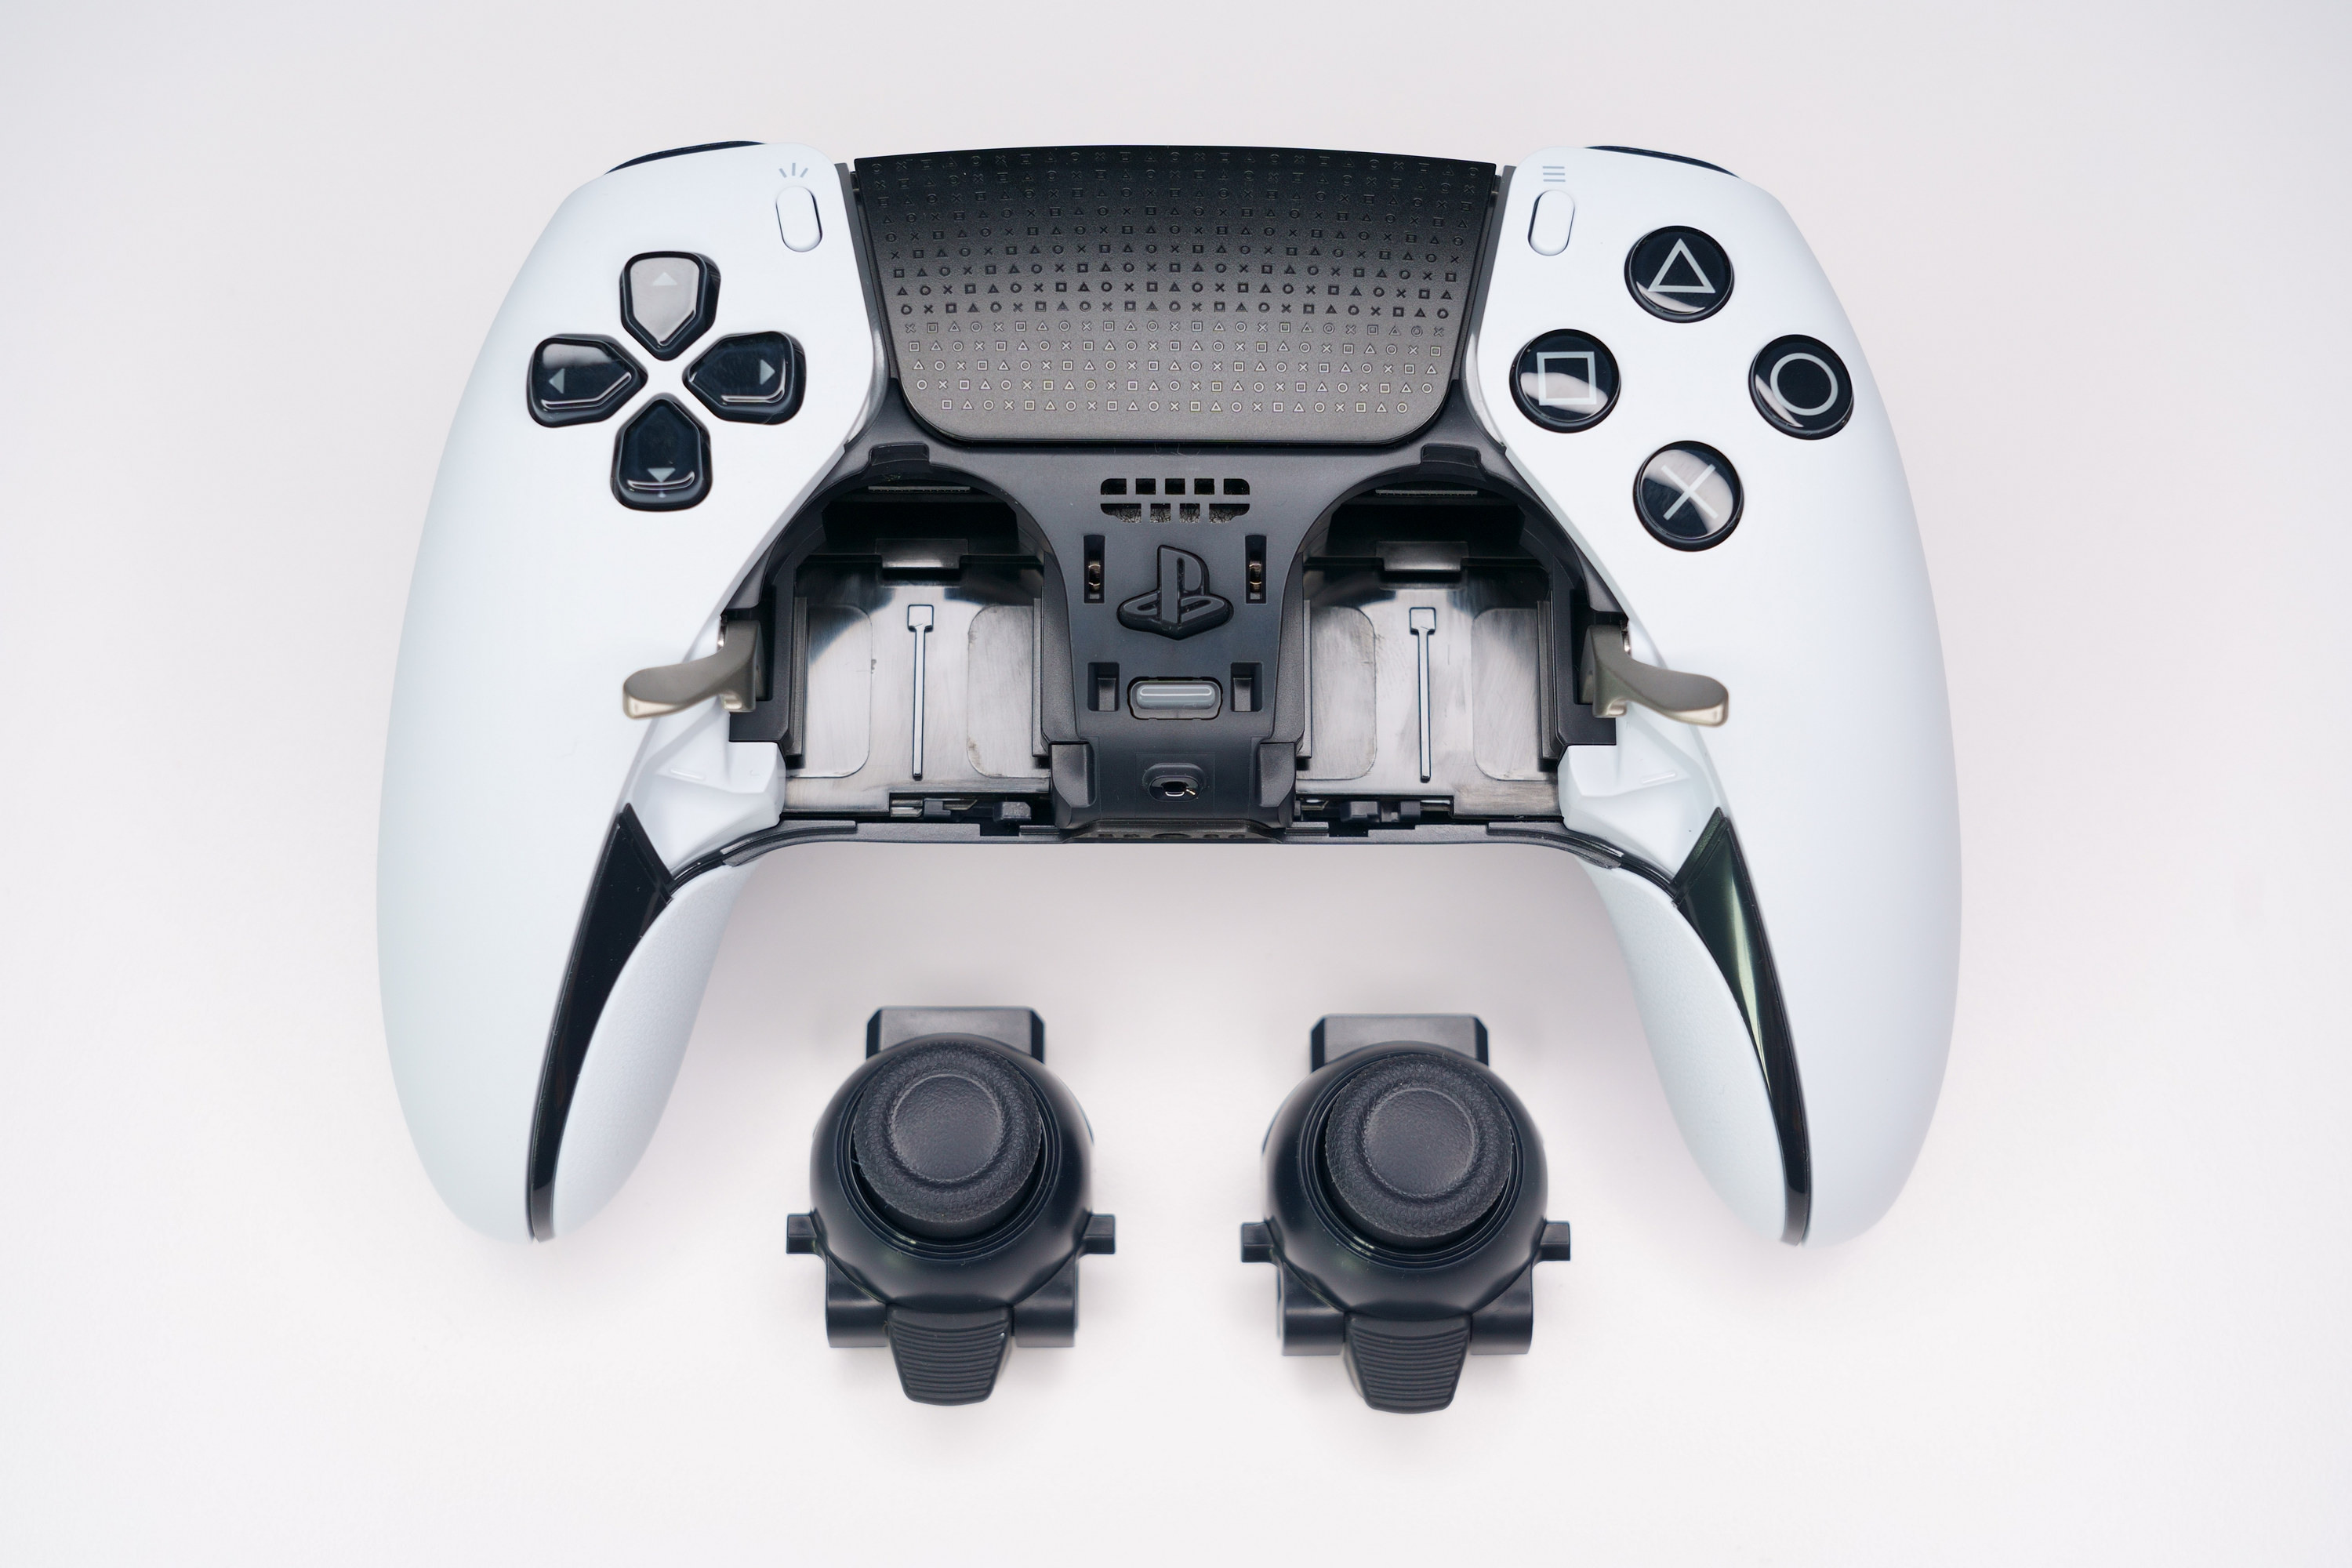 PS5 DualSense Edge 高效能控制器一手开箱 丰富自订功能满足各类型玩家需求插图54